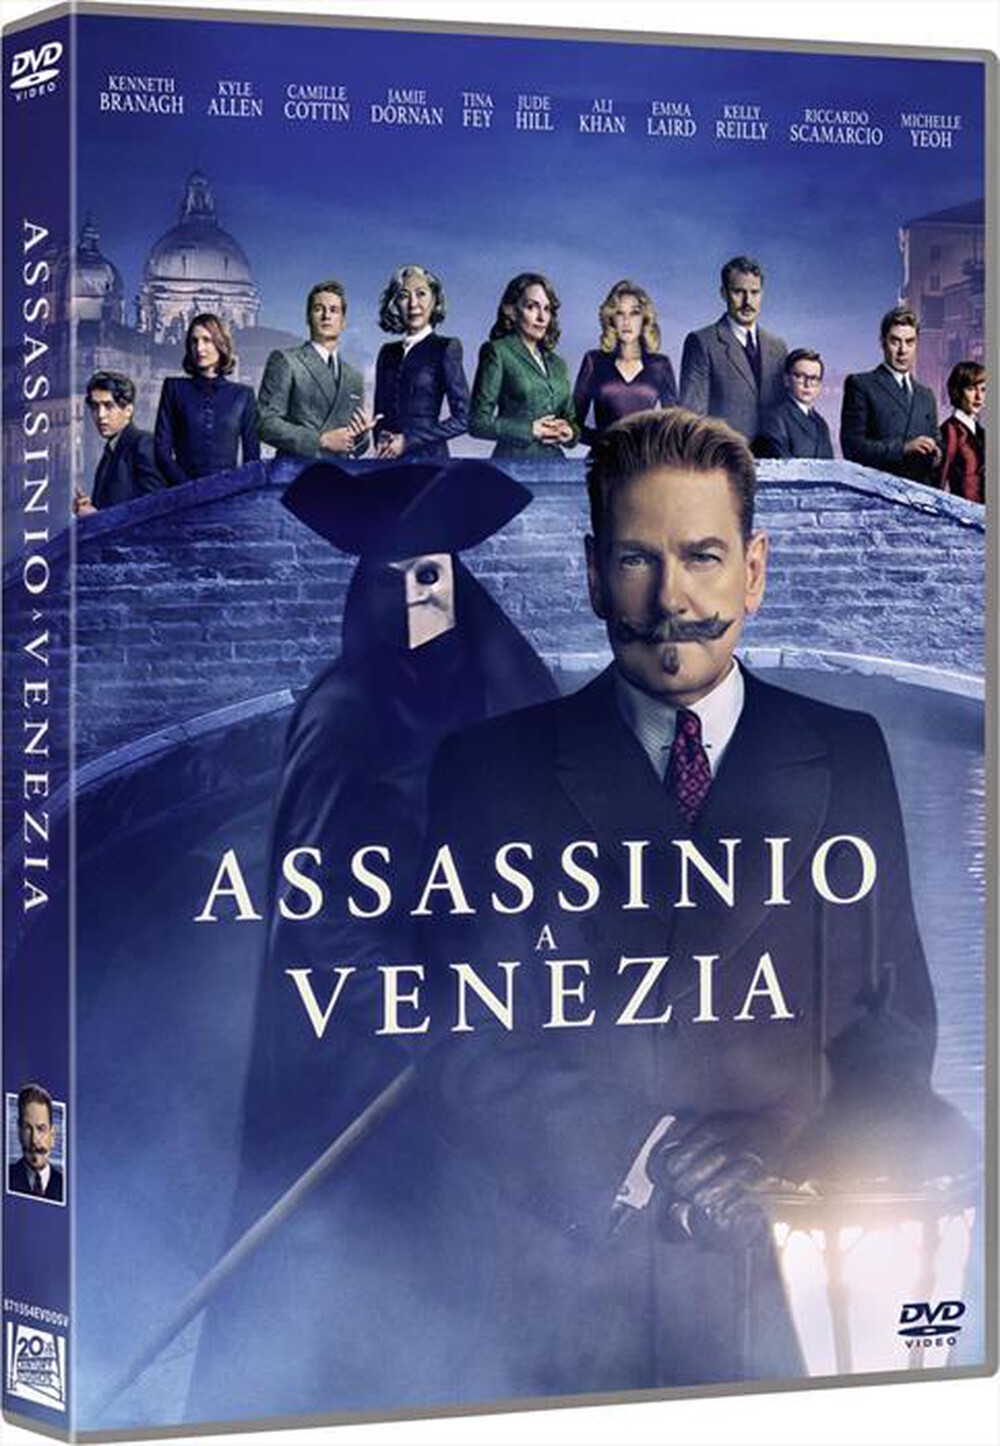 "20TH CENTURY FOX - Assassinio A Venezia"